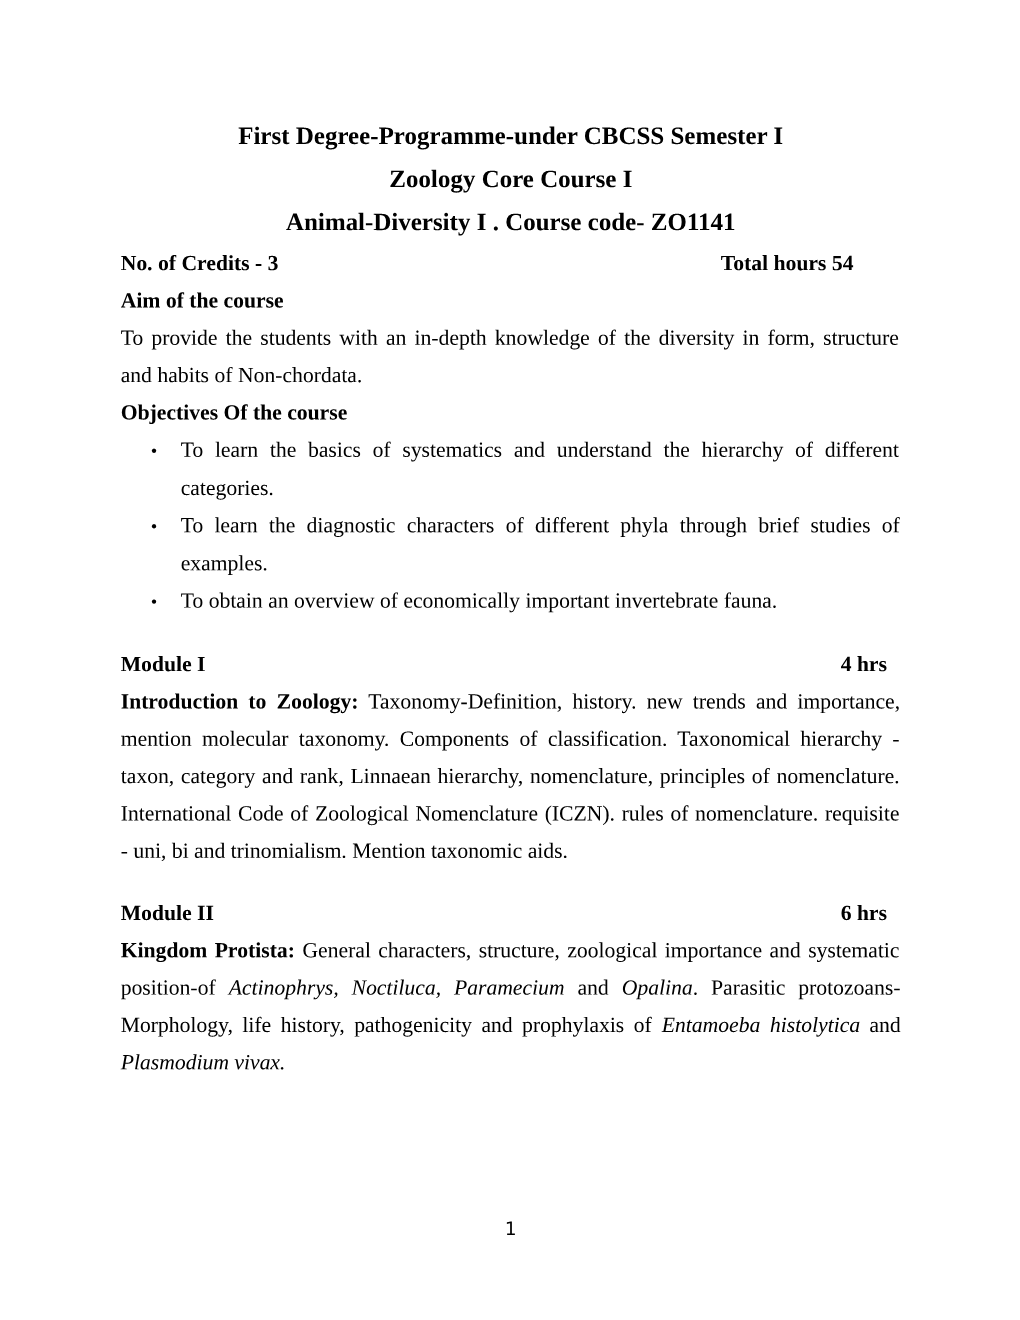 Zoology Core Course I Animal-Diversity I